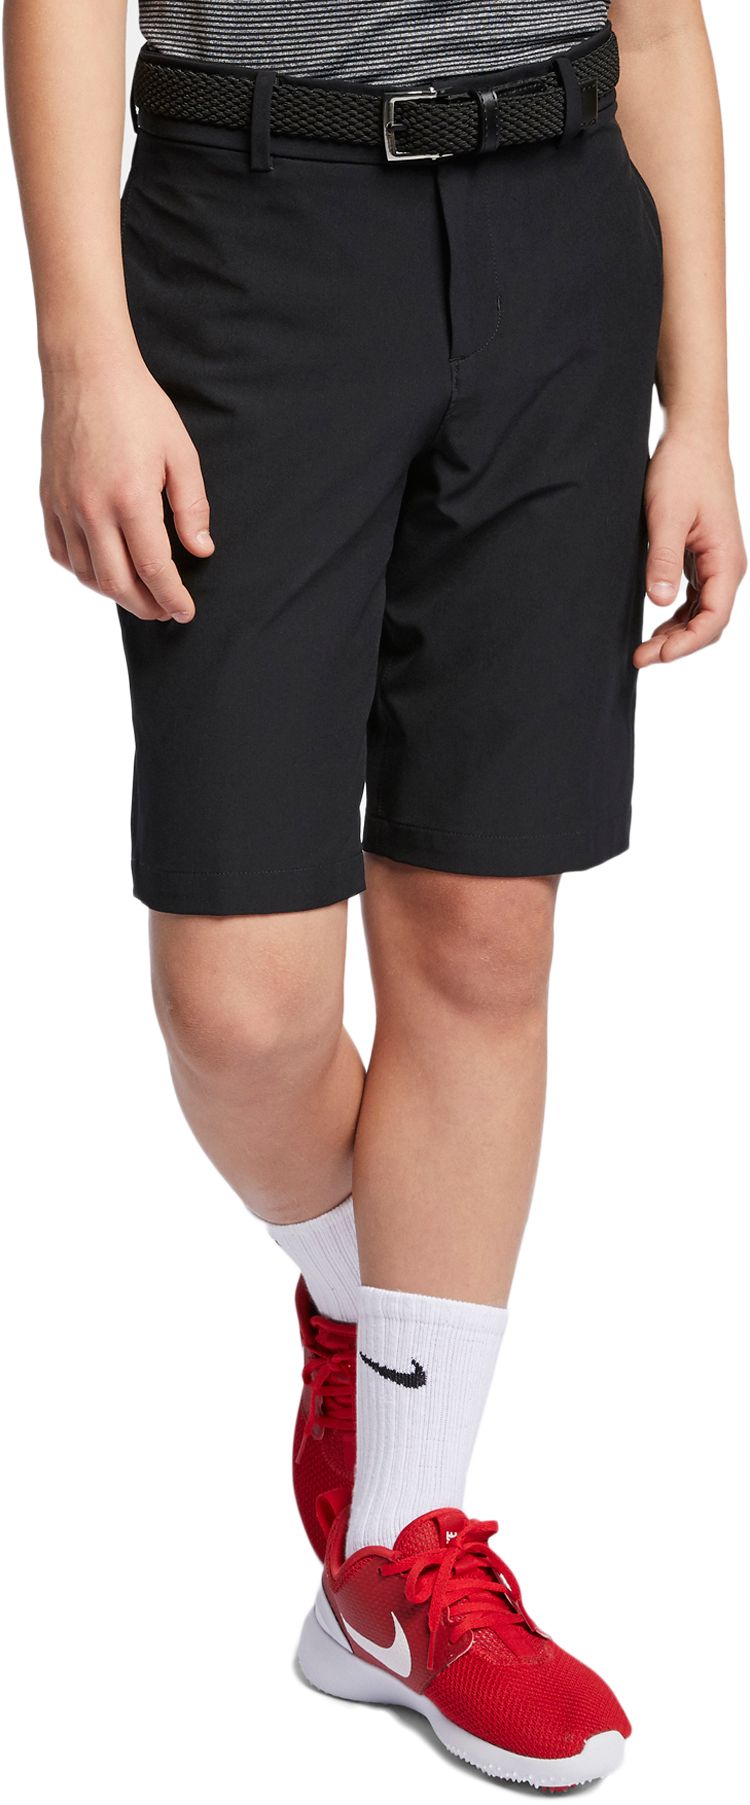 boys adidas golf shorts